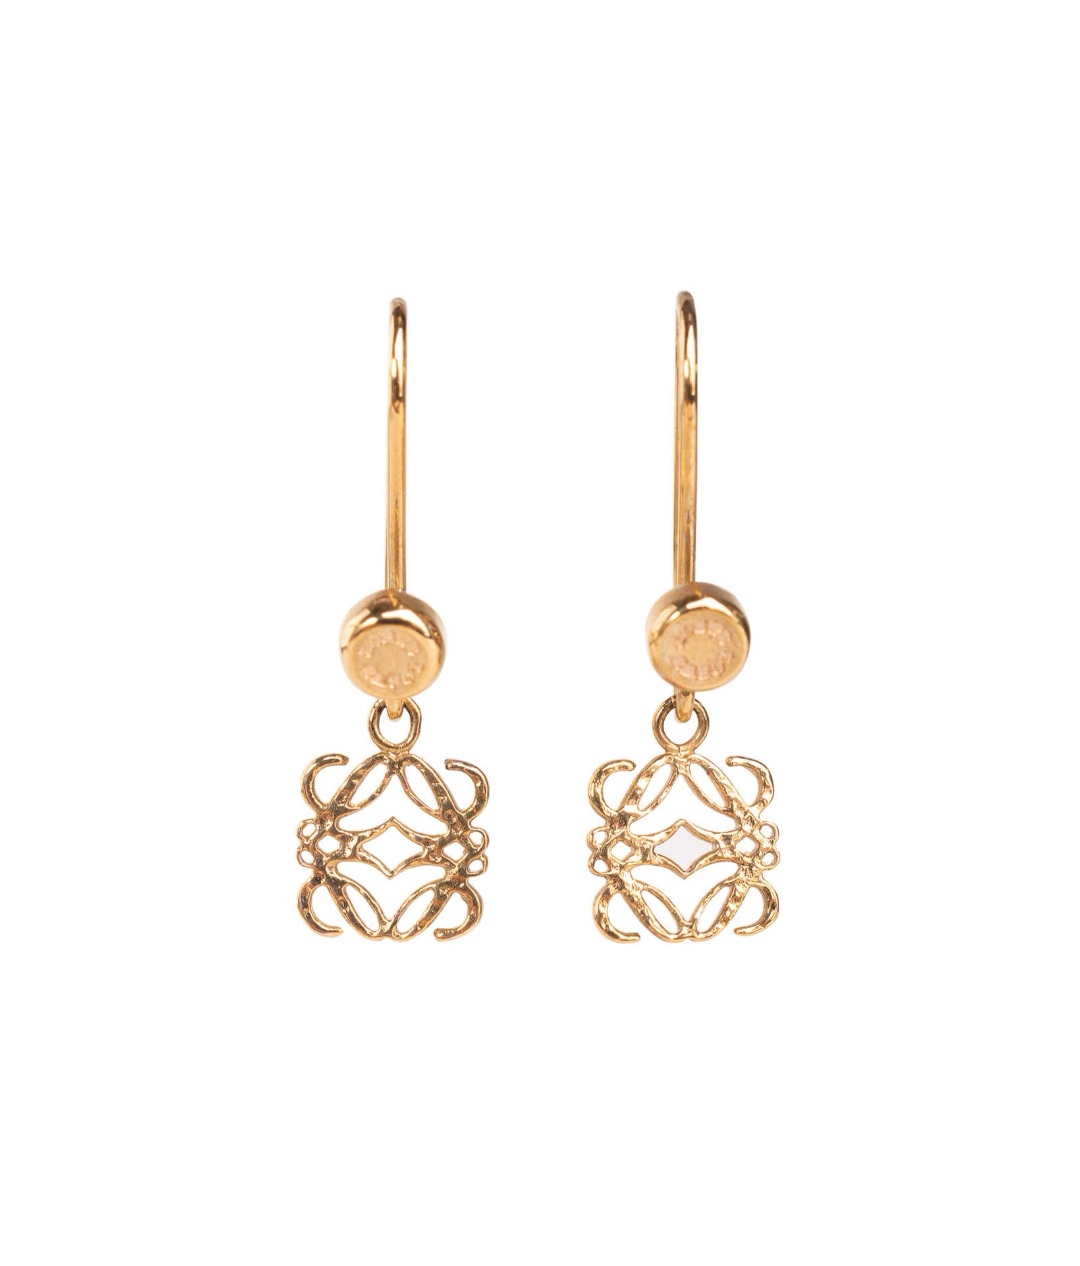 Loewe earrings